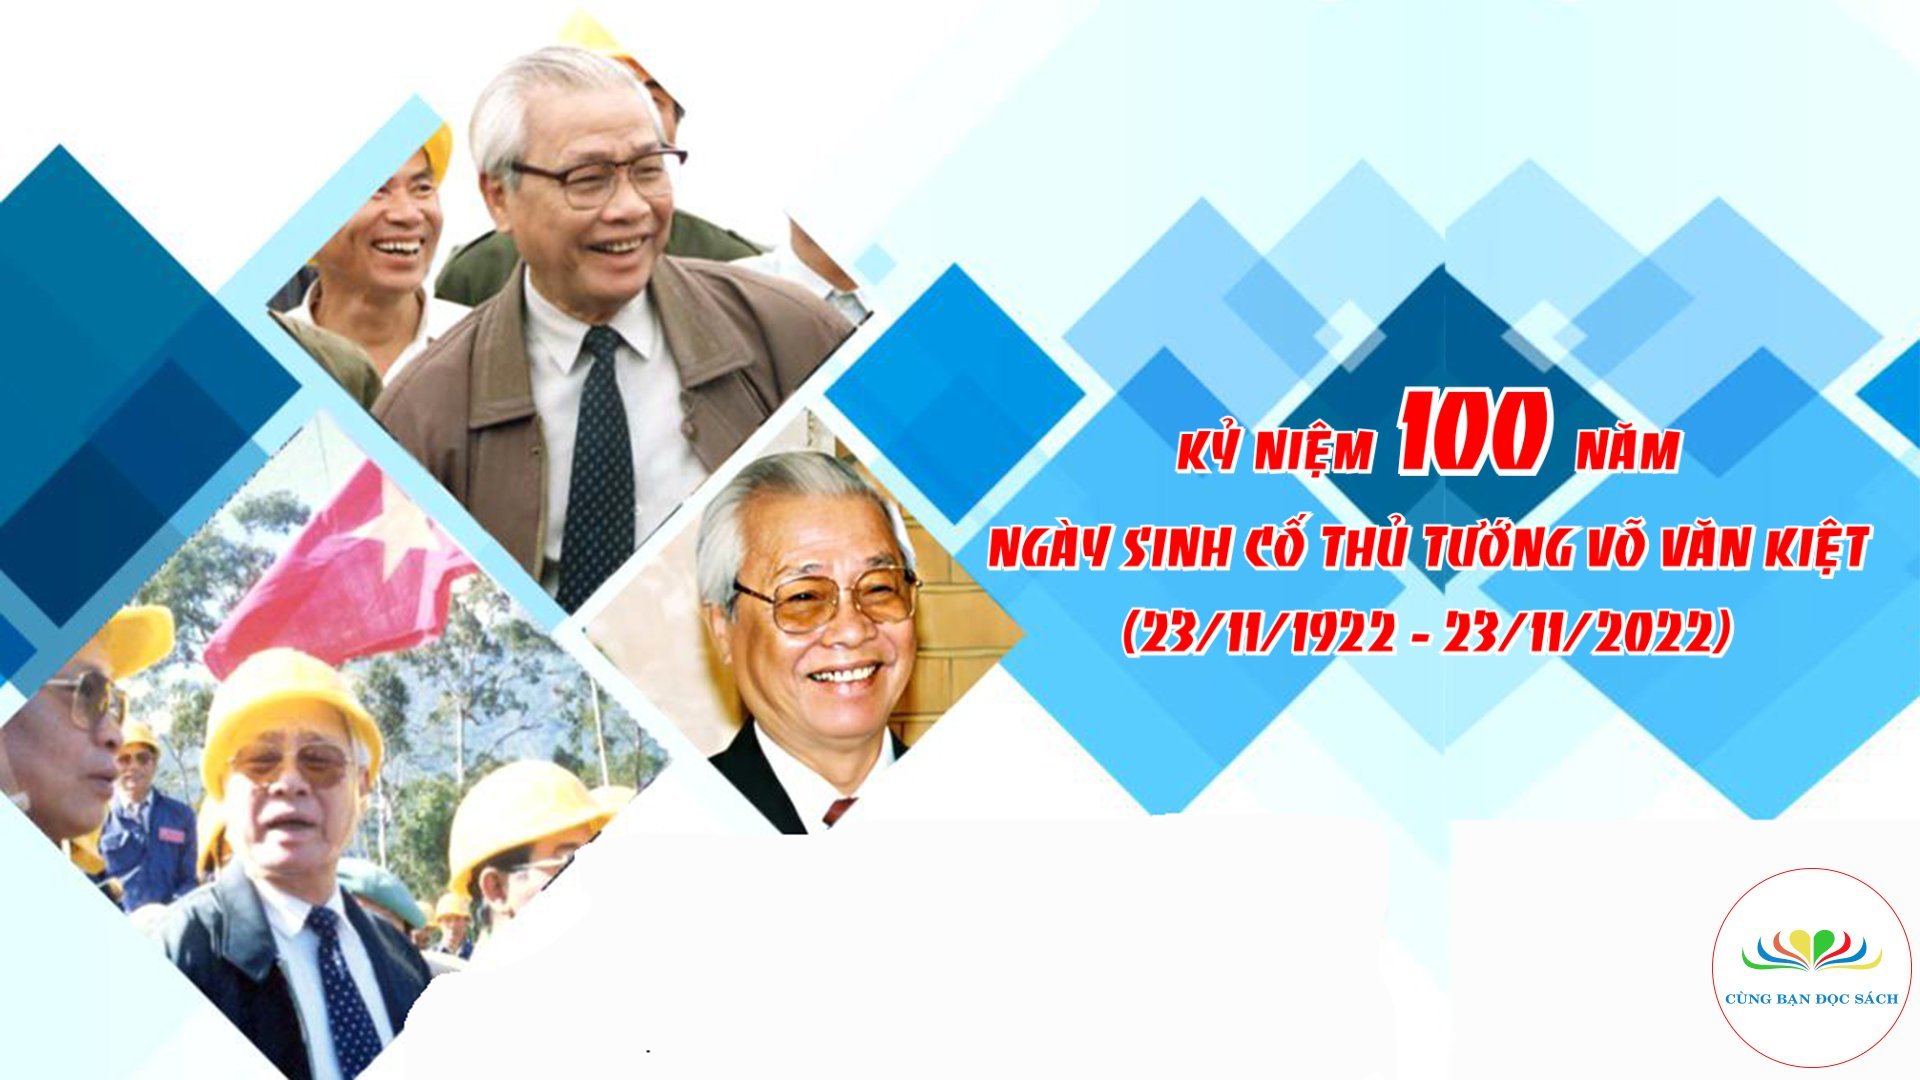 Kỷ niệm 100 năm ngày sinh Cố Thủ tướng Võ Văn Kiệt (23/11/1922 - 23/11/2022) - Ảnh 2.